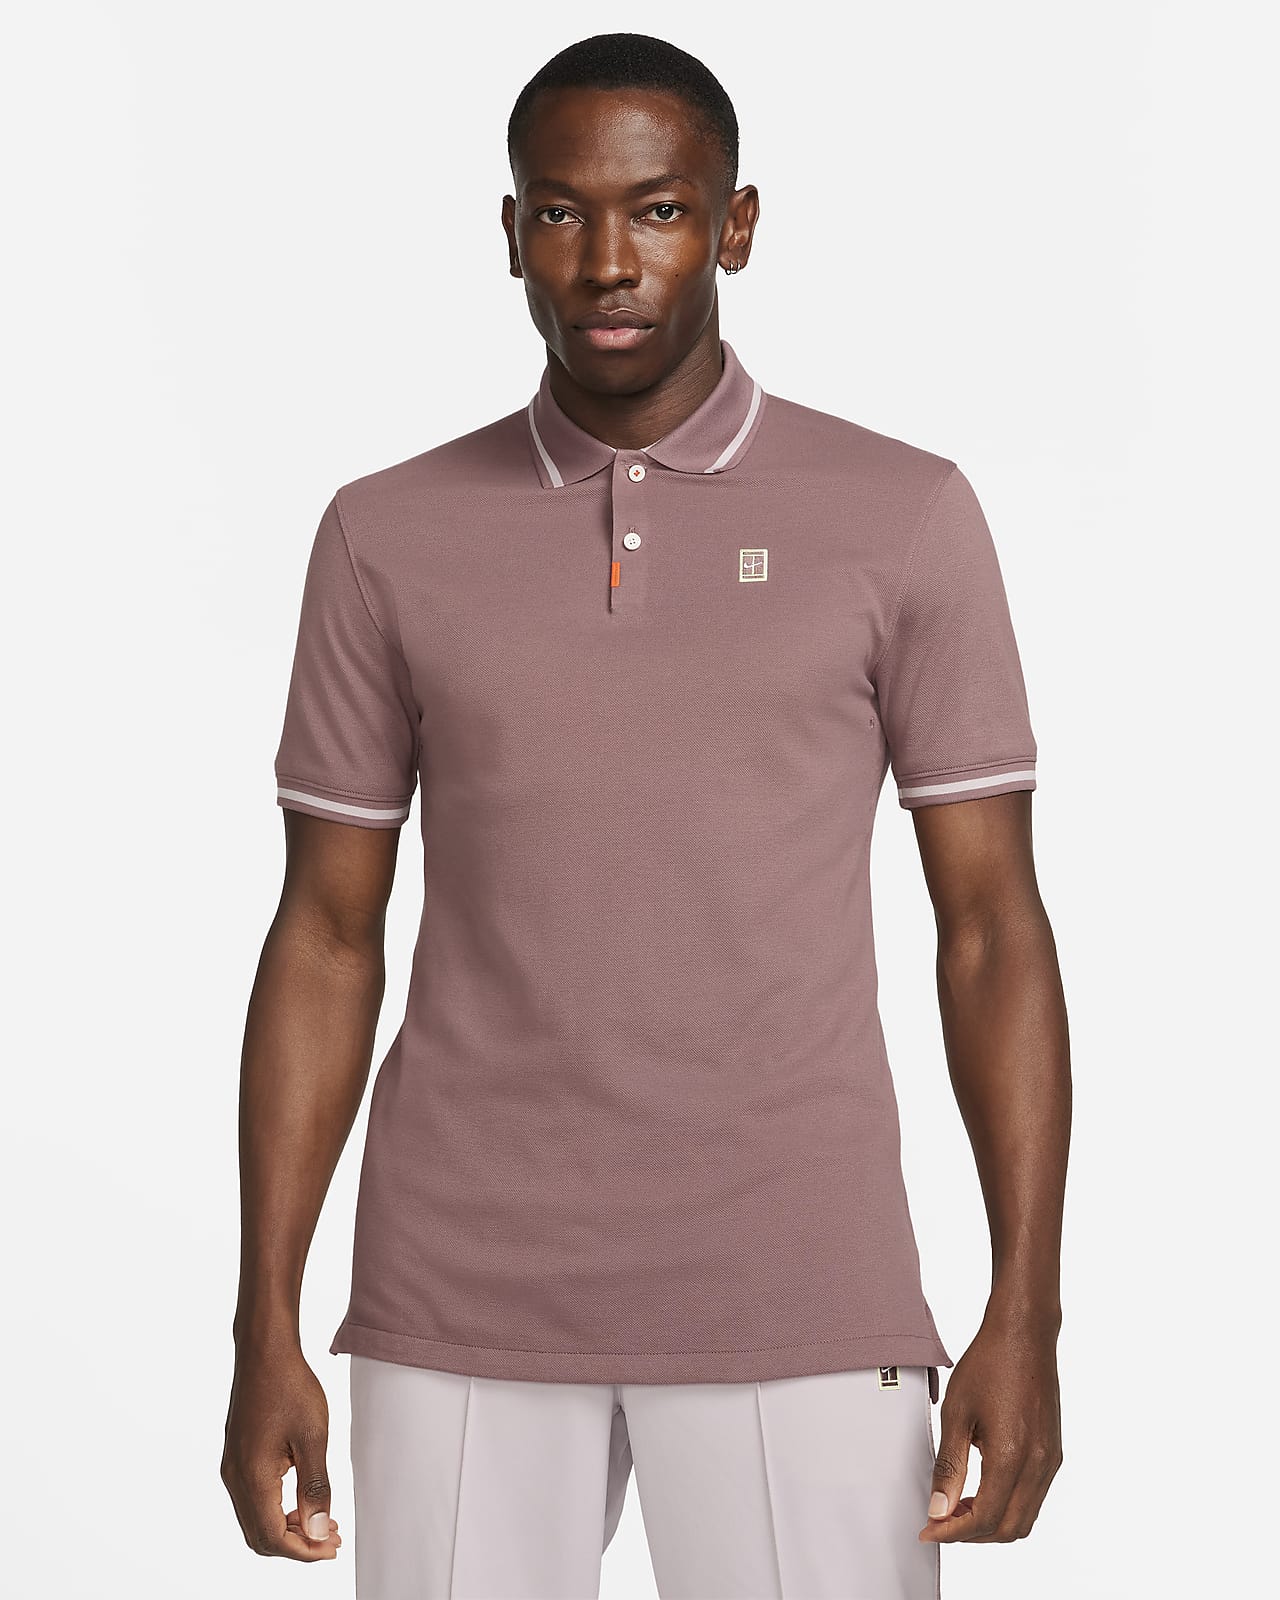 Ανδρική μπλούζα πόλο με στενή εφαρμογή The Nike Polo